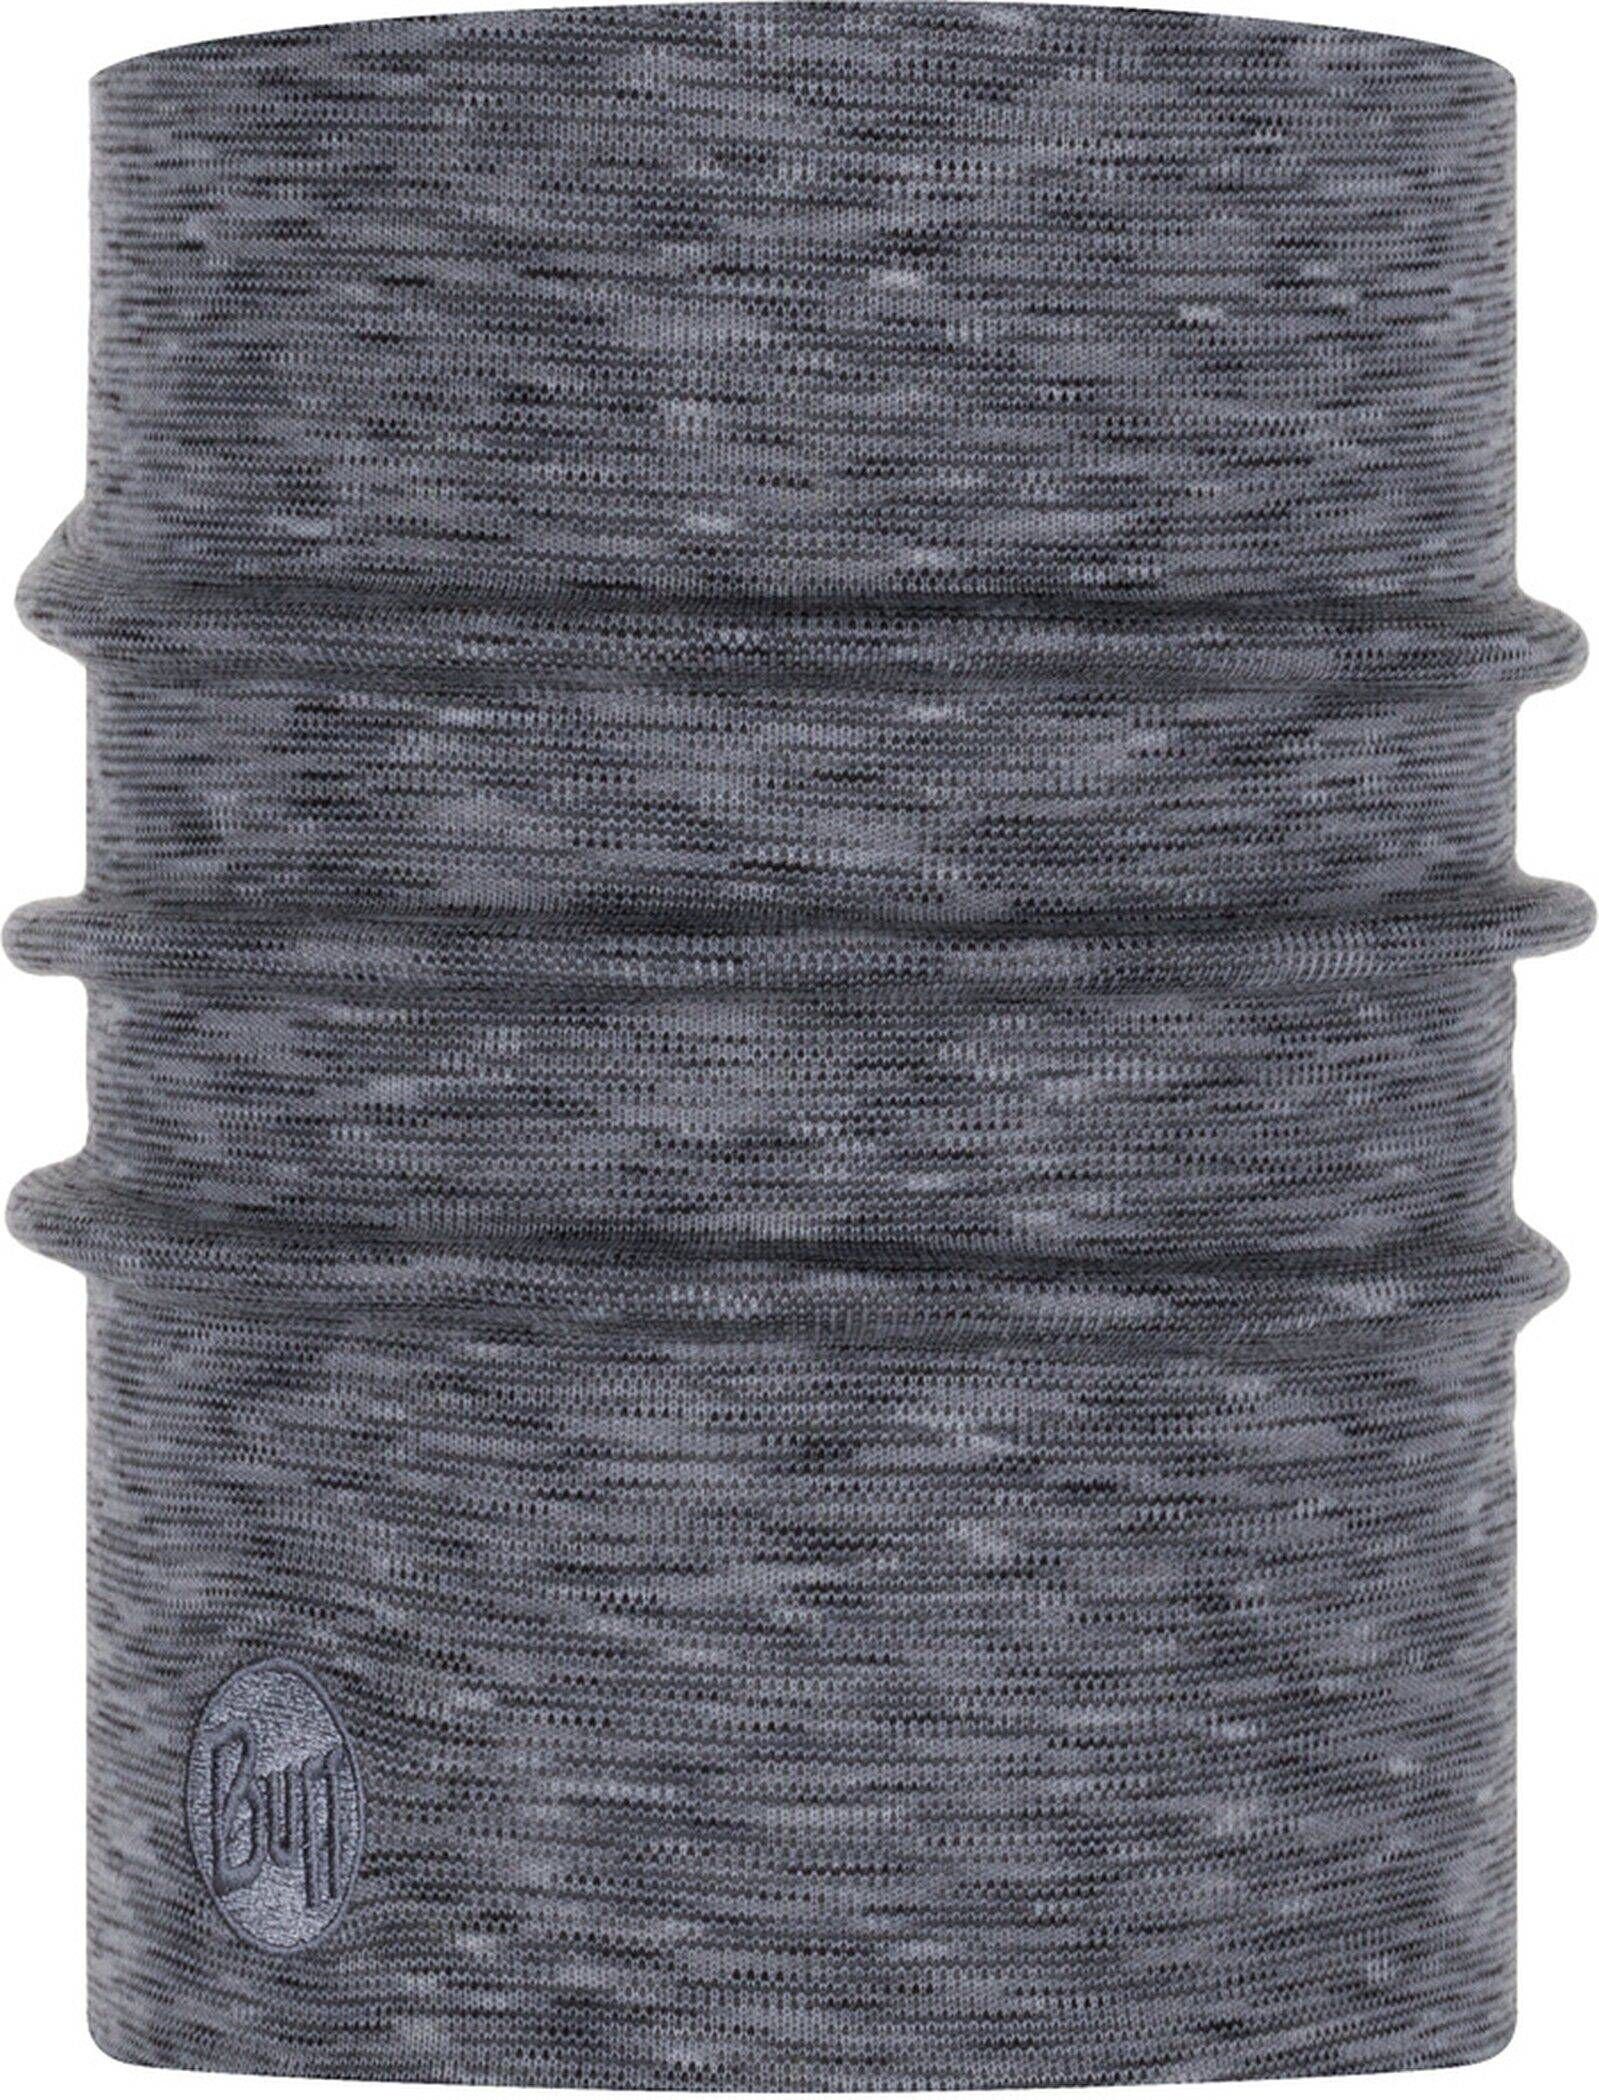 Buff Loop Halswärmer Grau-fog grey stripes multi